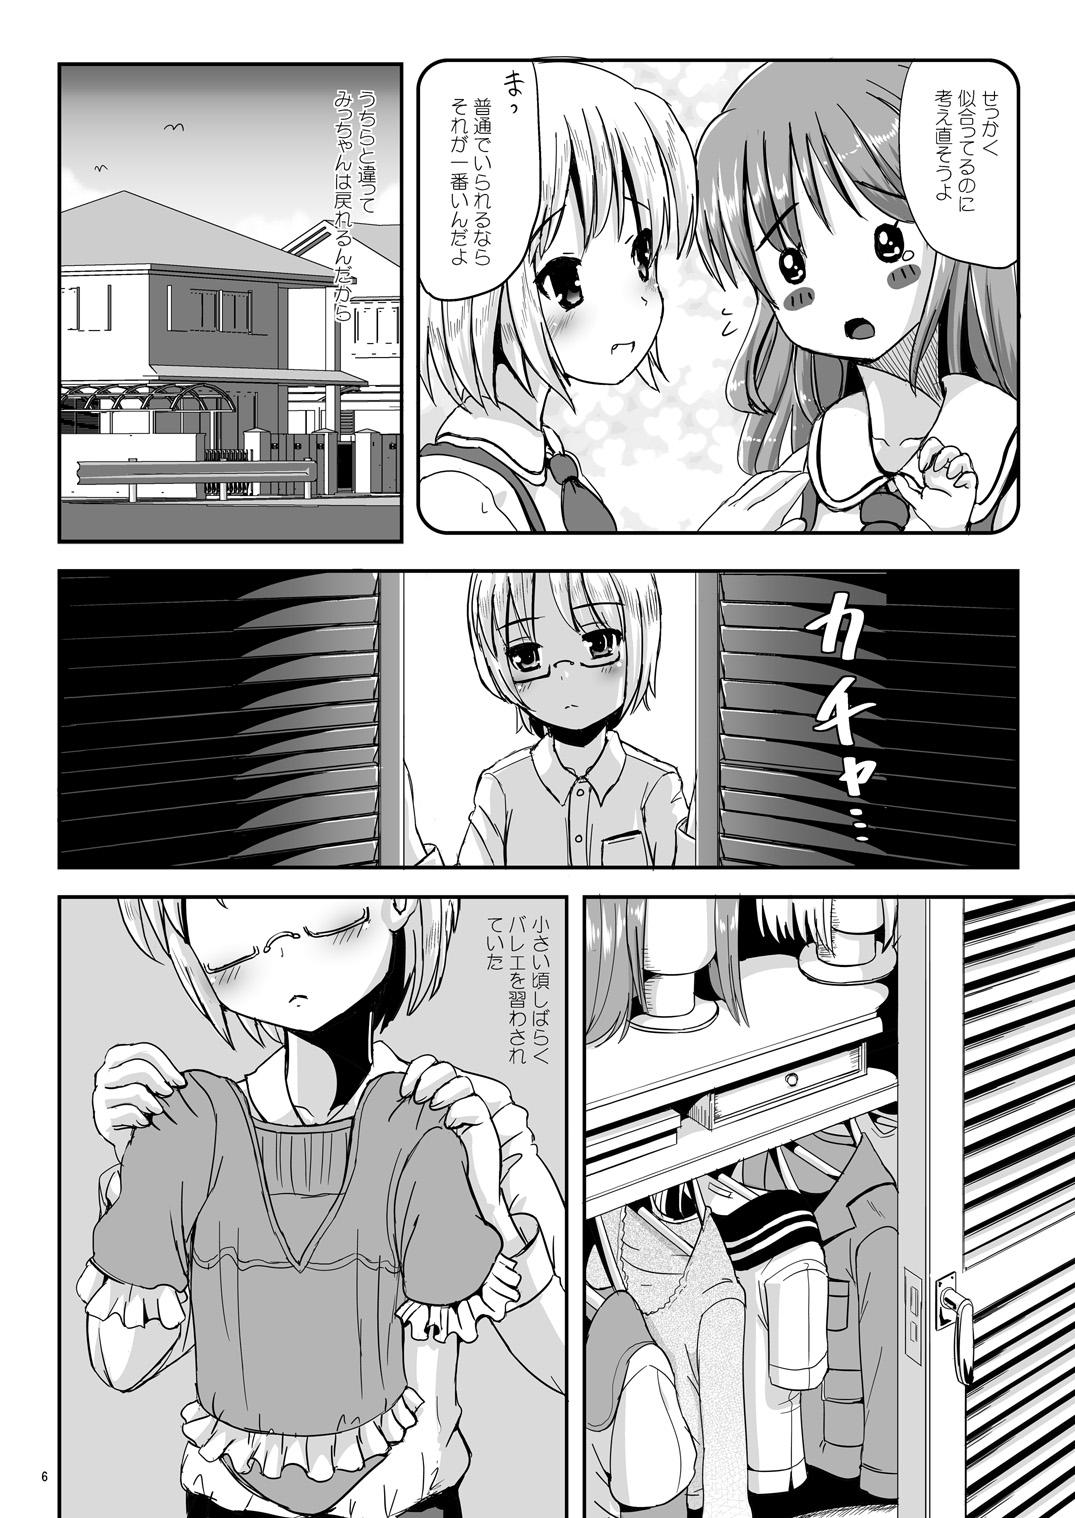 Bucetinha Natsume no Shiori 6 Babes - Page 5